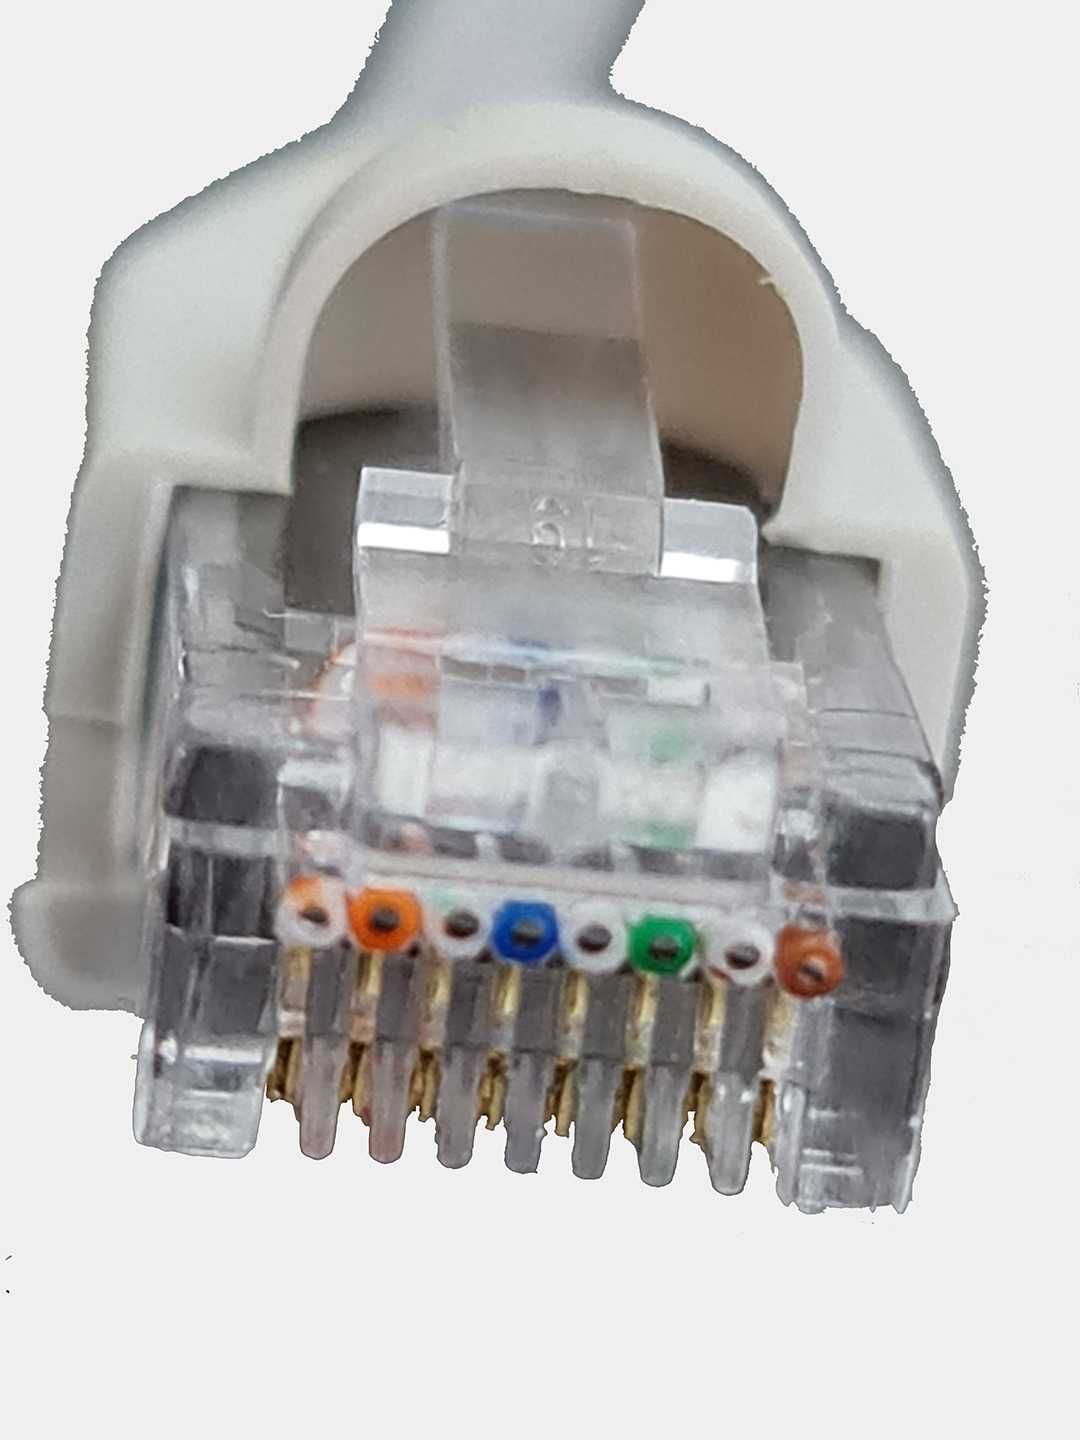 Патч-корд / patch-cord / коммутационный шнур / интернет кабель